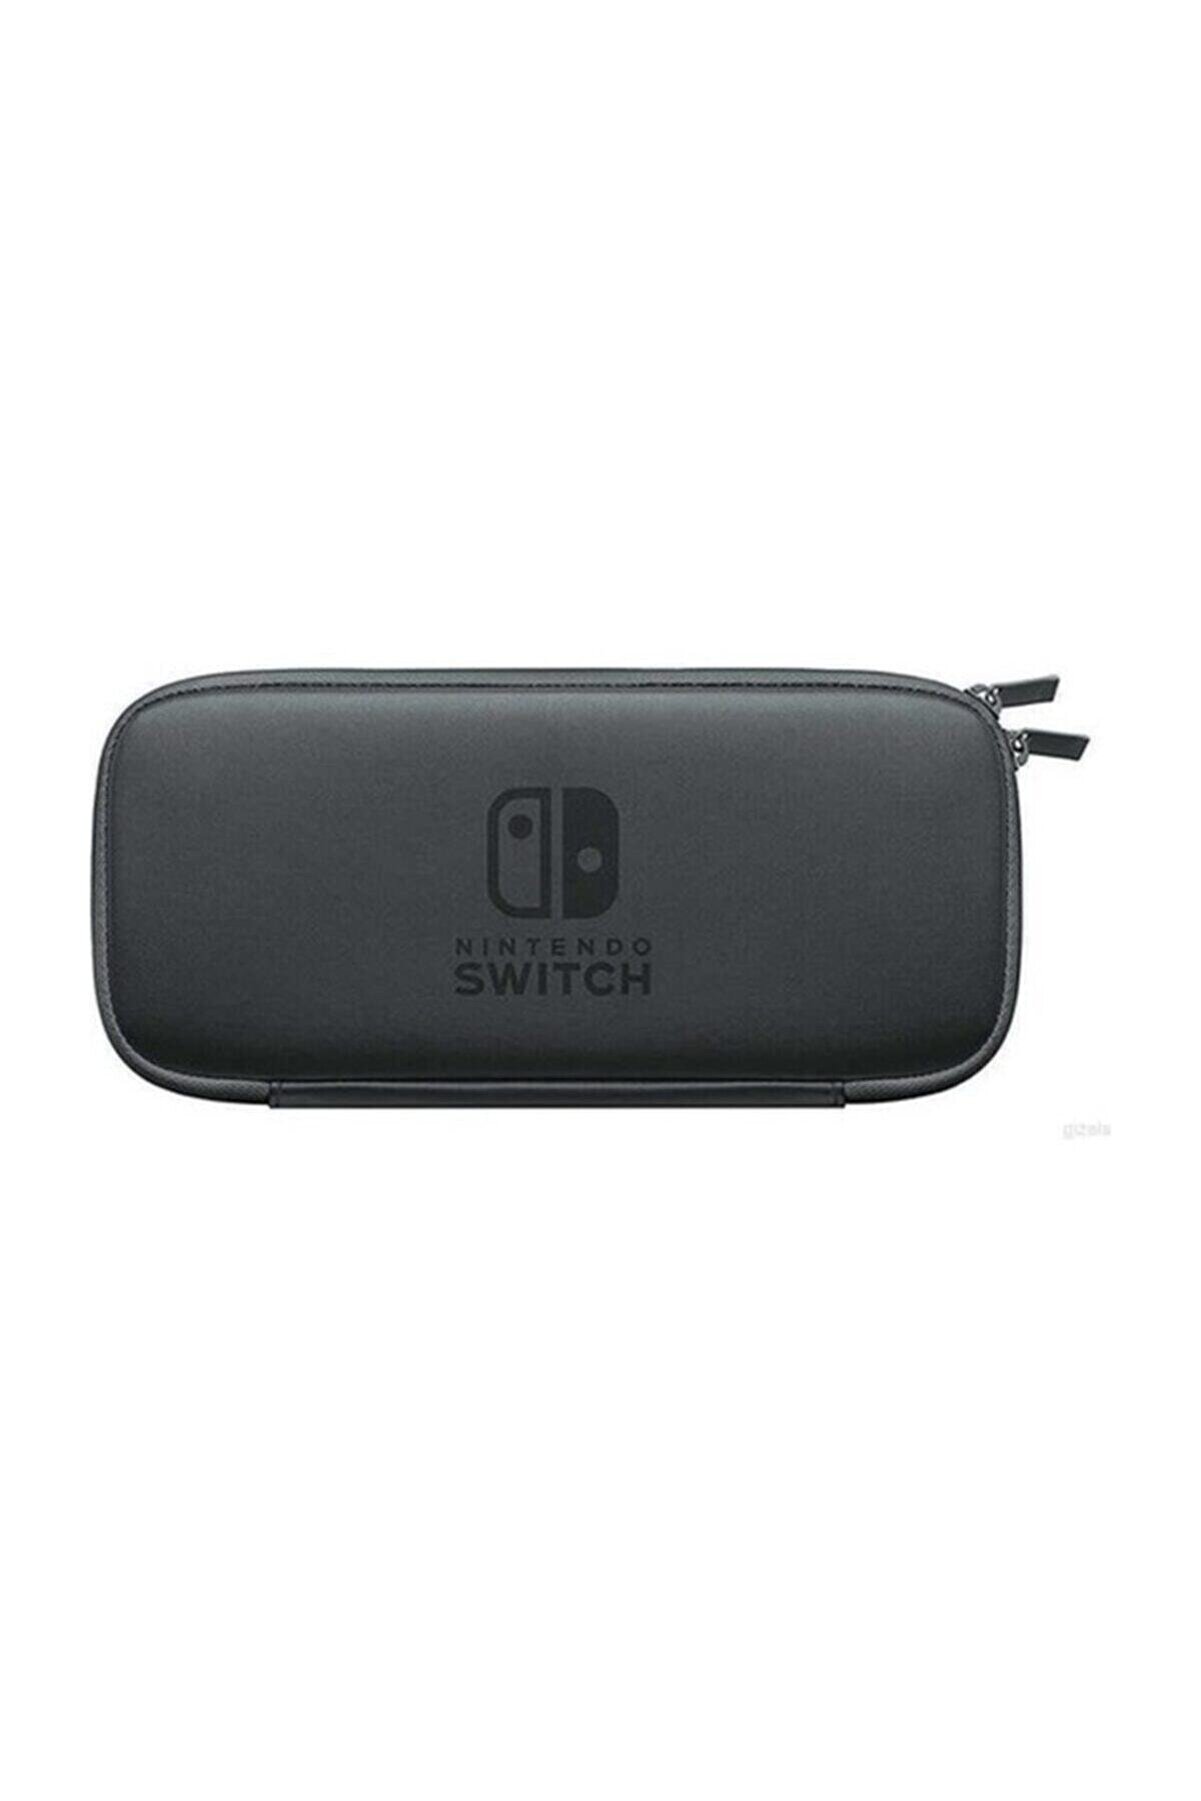 Nintendo Switch Taşıma Kılıfı Ve Ekran Koruyucu